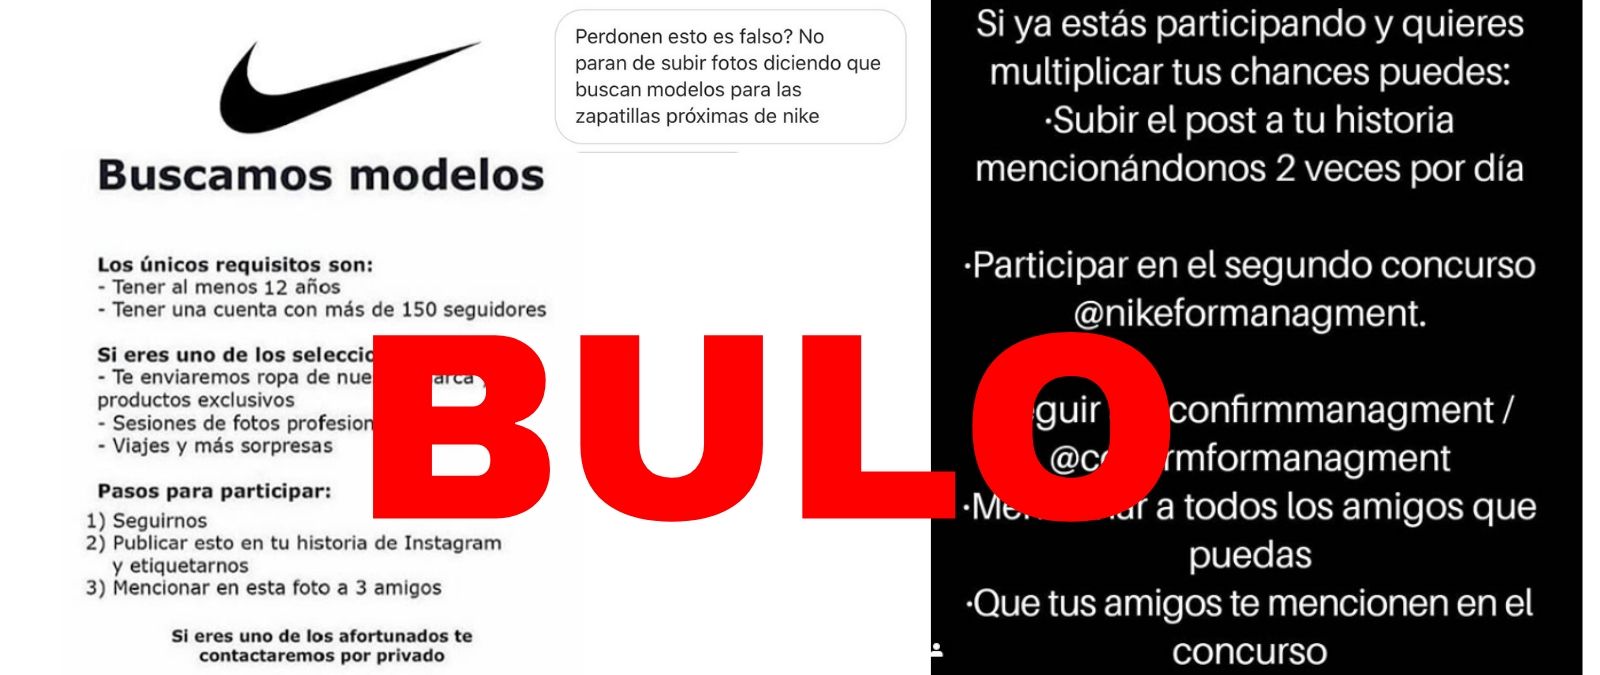 No, Nike no está buscando modelos en Instagram con la cuenta @nikemanagment · Maldita.es - Periodismo para que te la cuelen